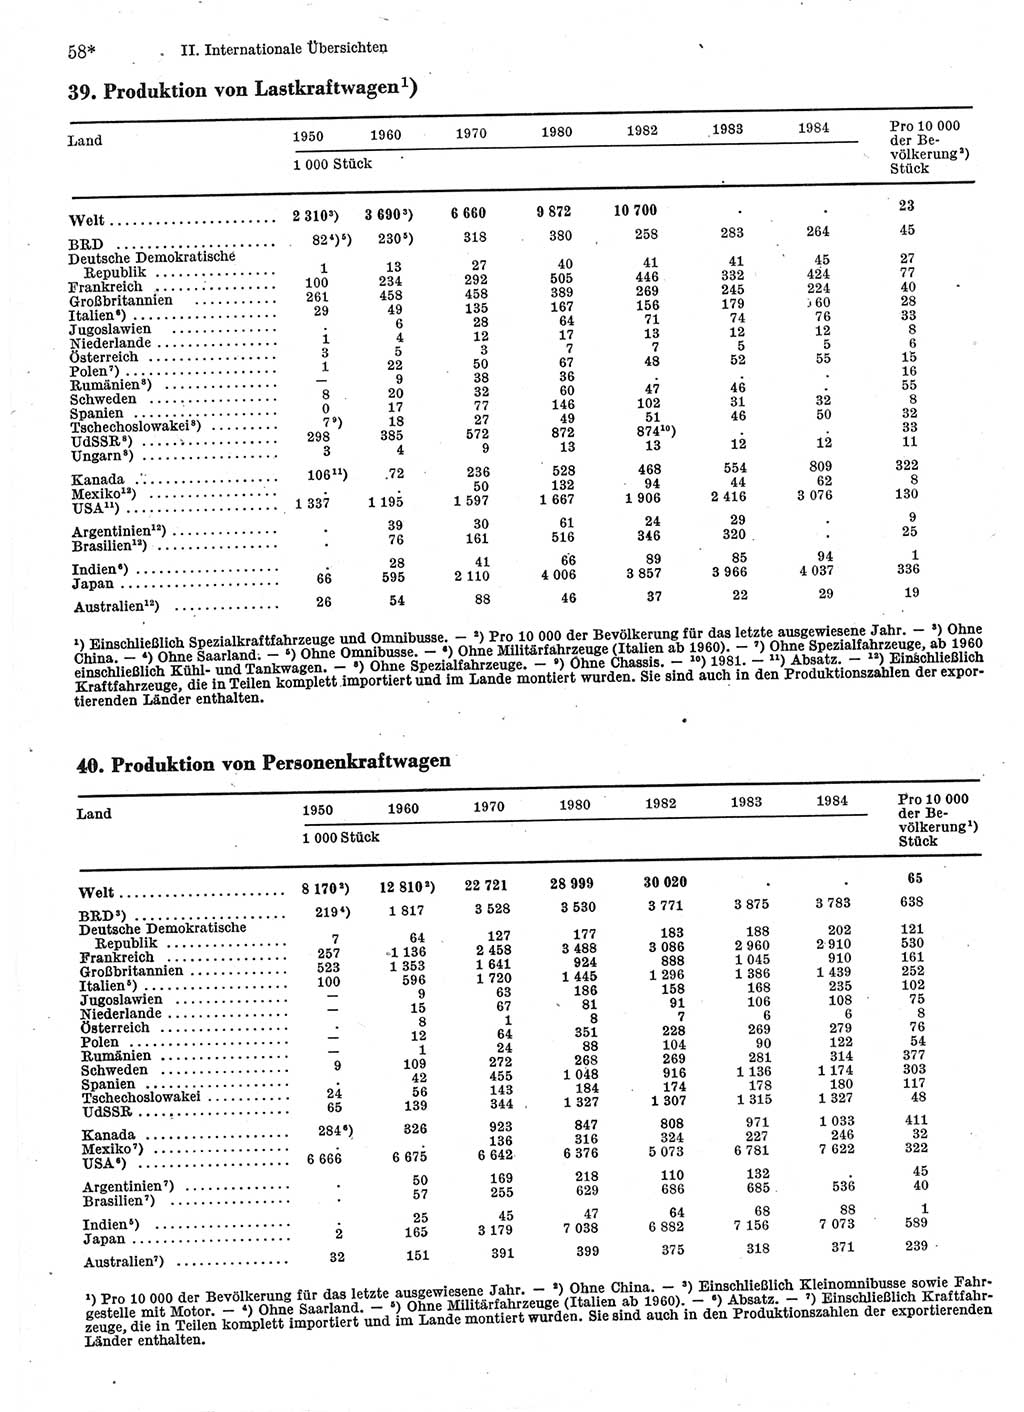 Statistisches Jahrbuch der Deutschen Demokratischen Republik (DDR) 1986, Seite 58 (Stat. Jb. DDR 1986, S. 58)